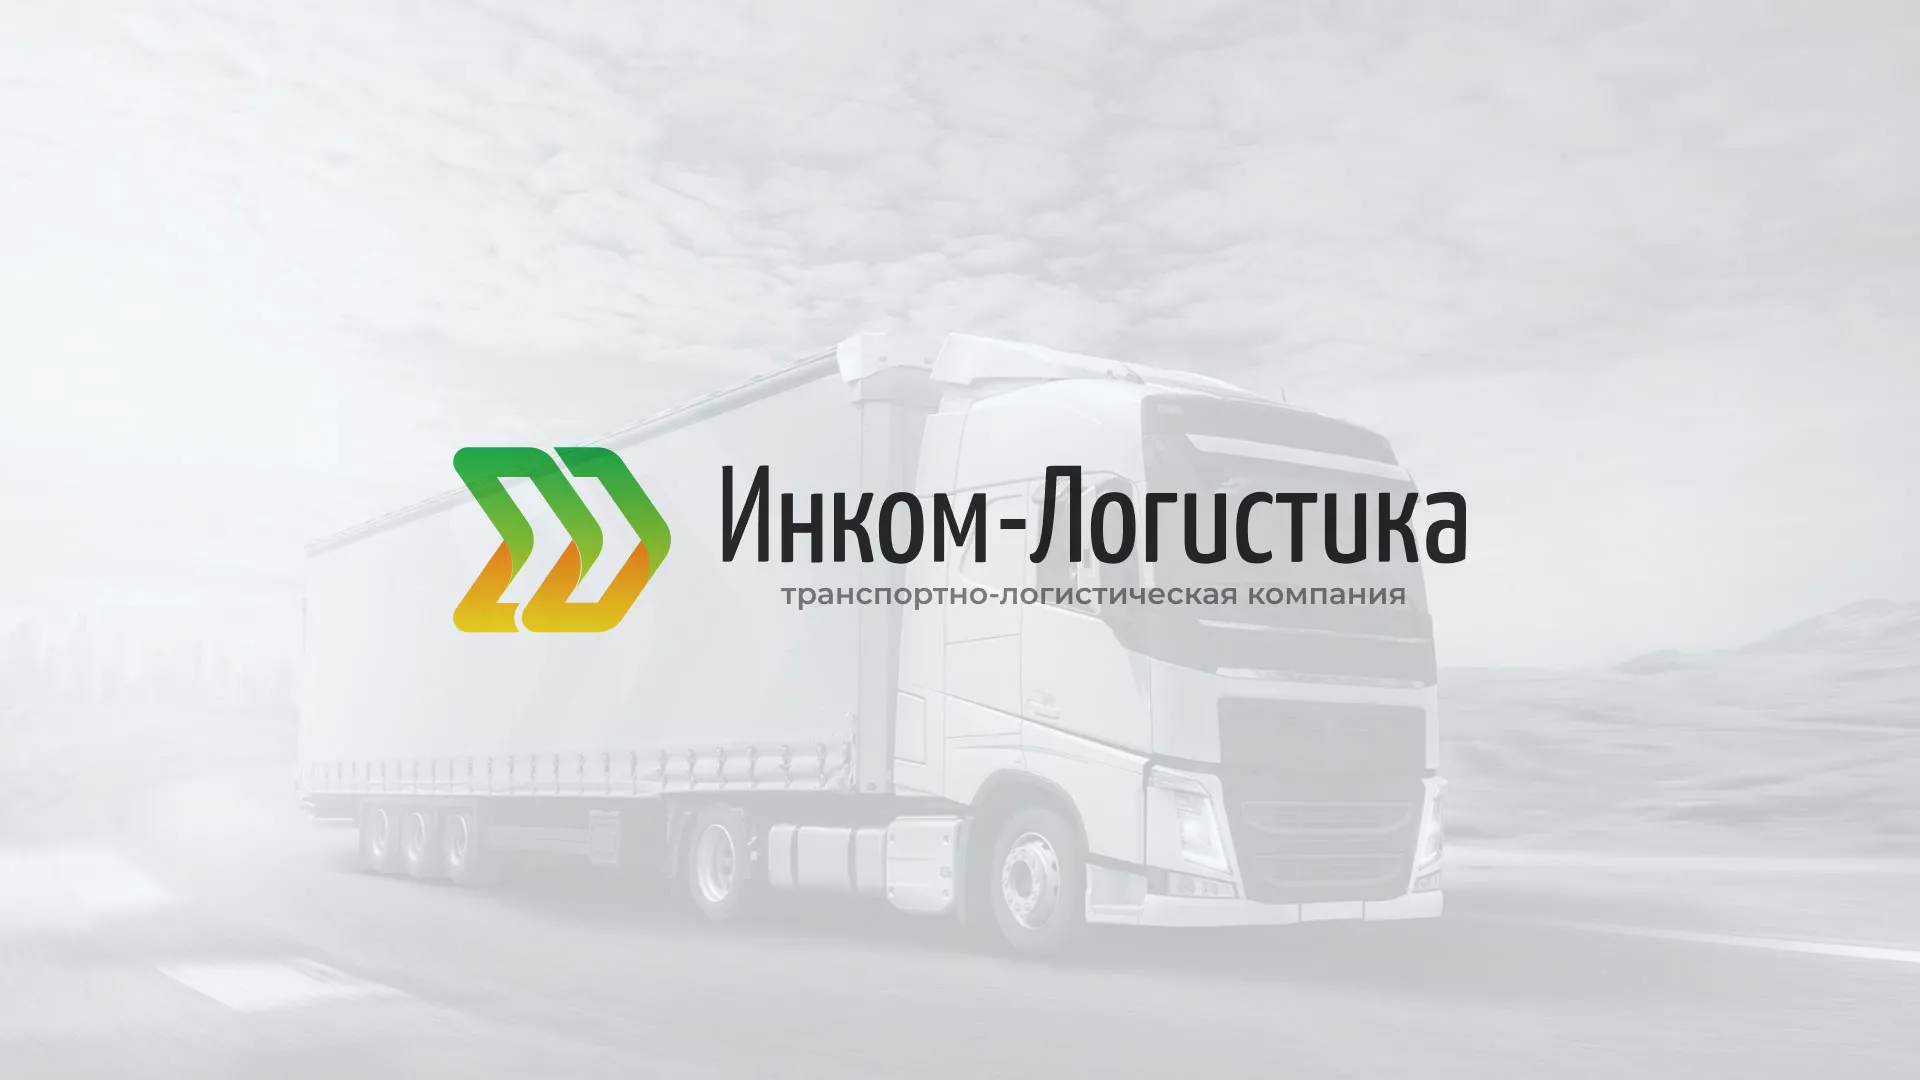 Разработка логотипа и сайта компании «Инком-Логистика» в Домодедово